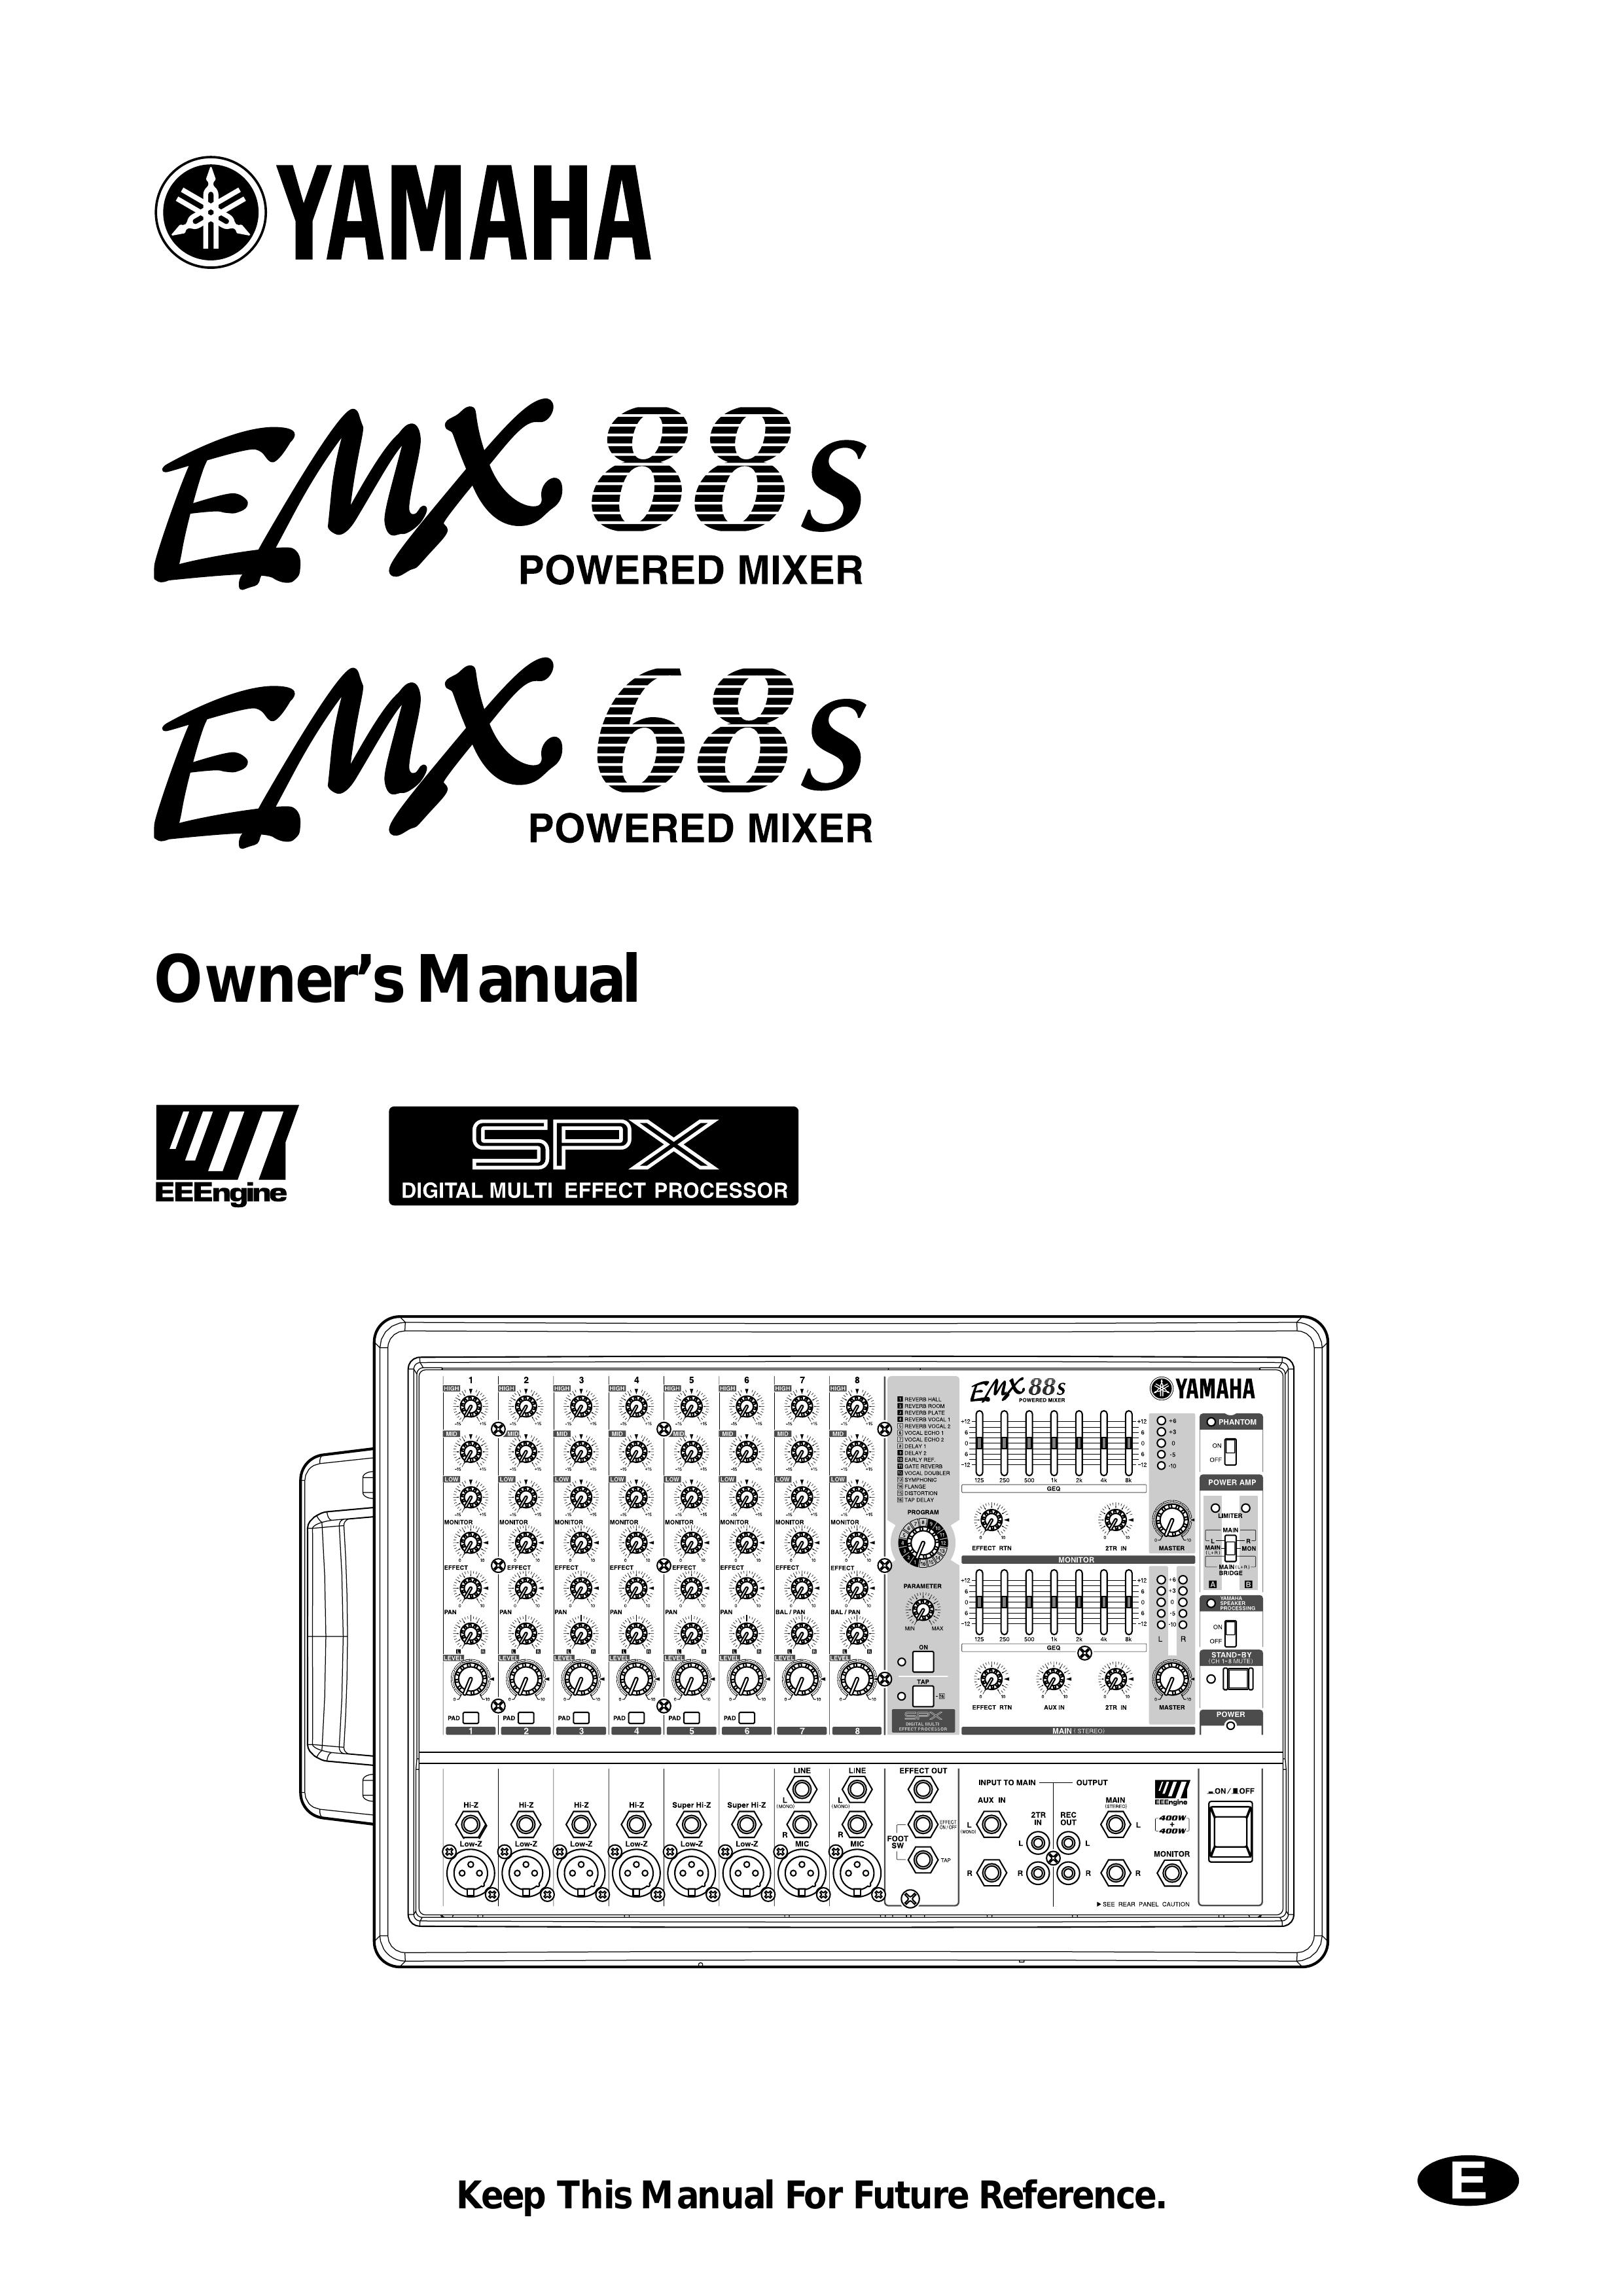 Yamaha EMX68s Music Mixer User Manual